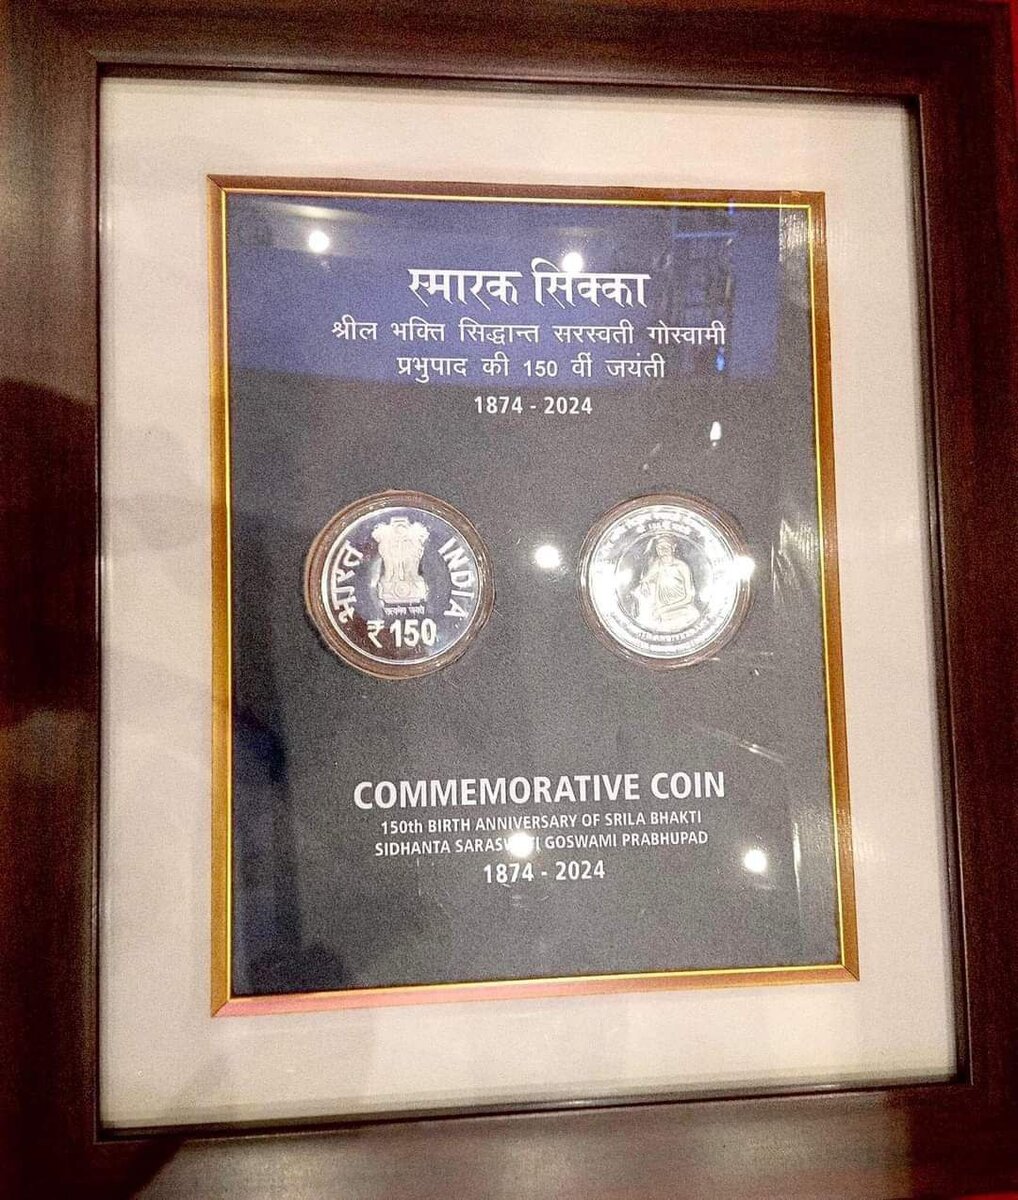 Торжественная презентация прошла в Дели с участием премьер-министра Индии Нарендра Моди. Он и представил памятную монету номиналом 150 рупий и почтовую марку.